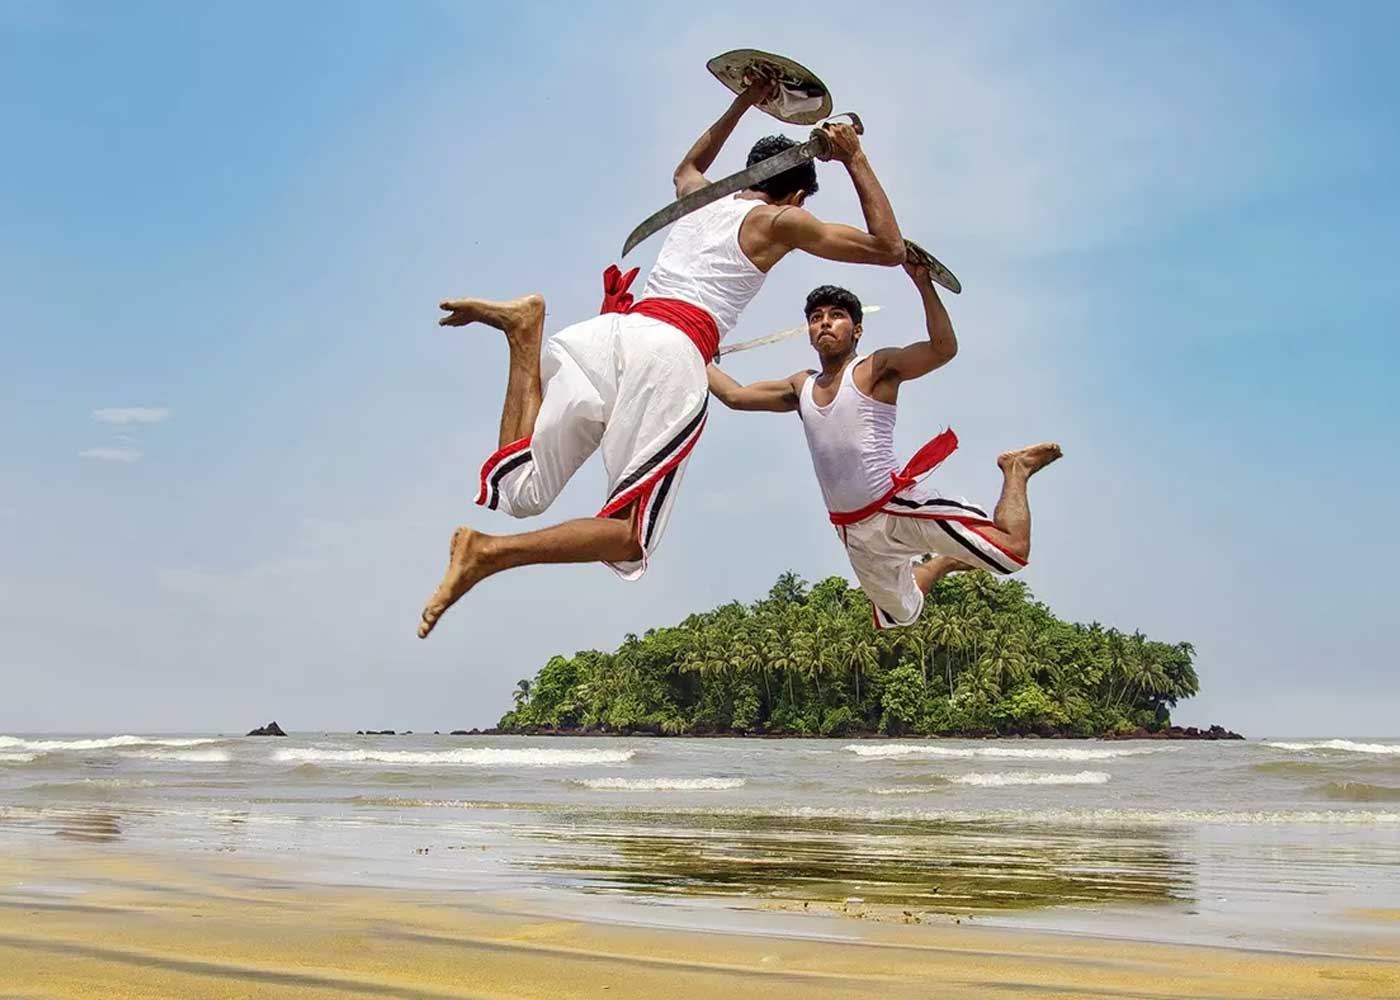 Kalaripayattu Original Martial Art from Kerala, India